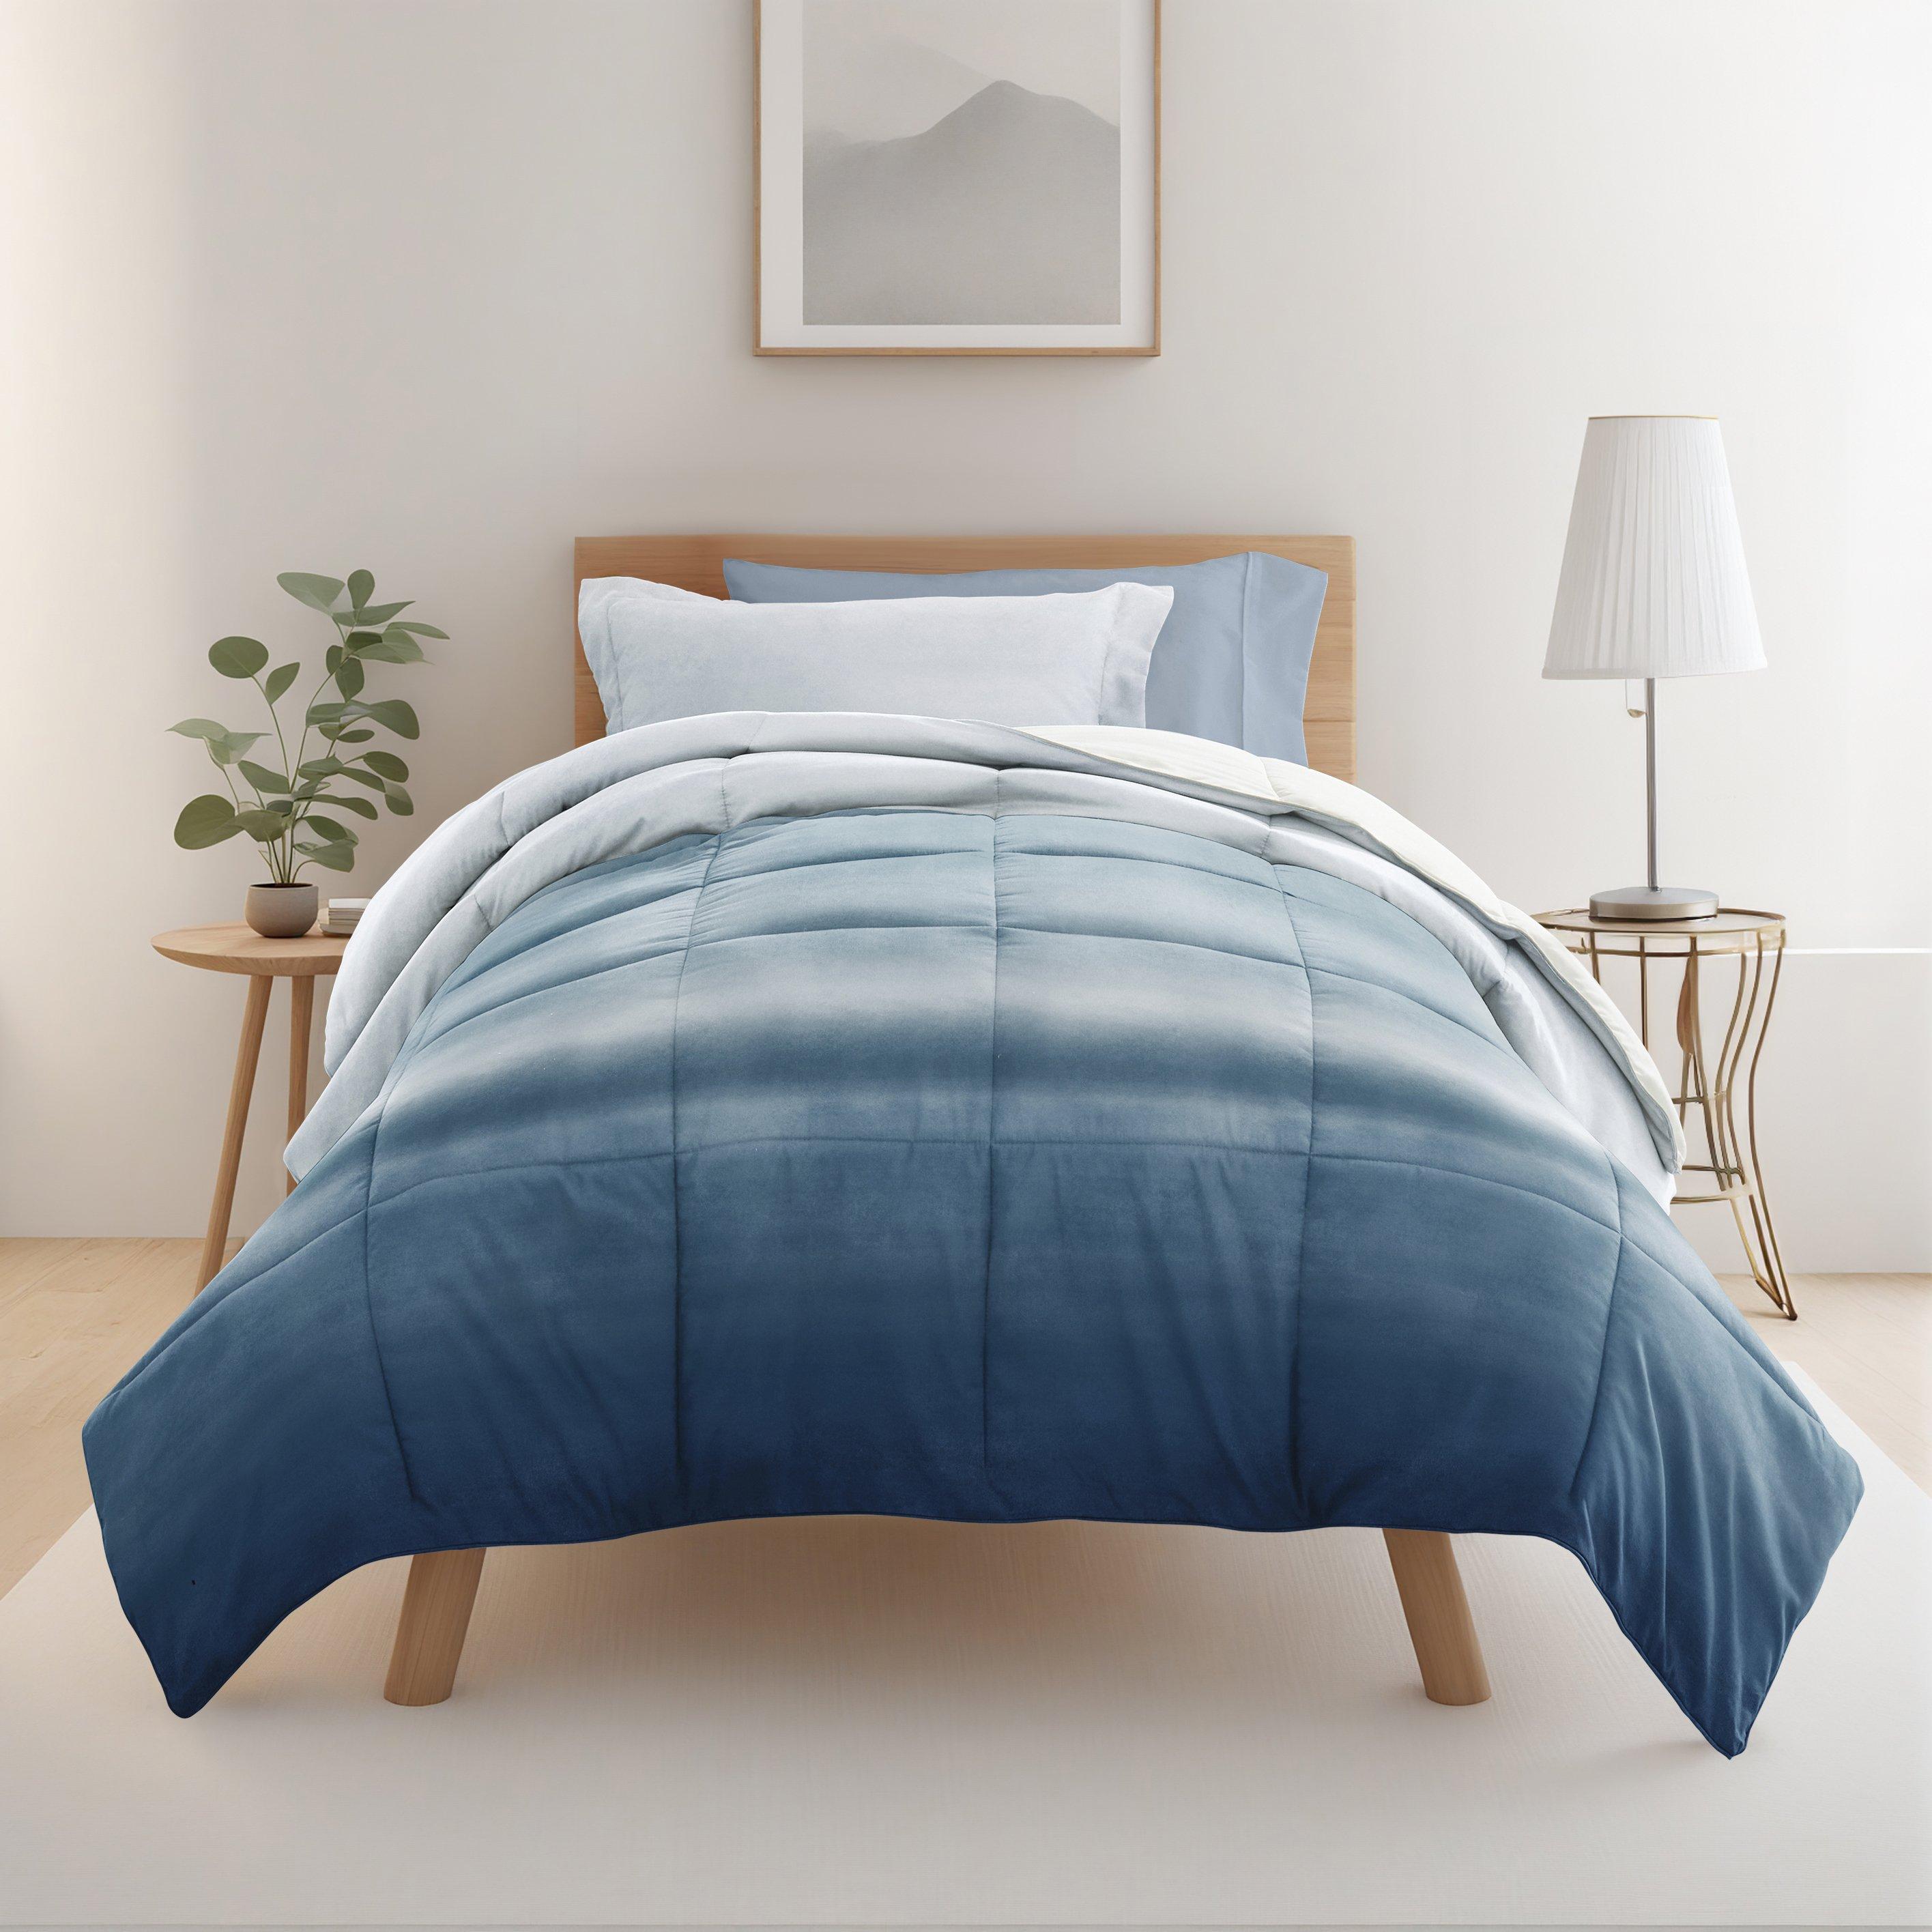 8 Piece Light Blue Patterned Comforter Dorm Set Bundle